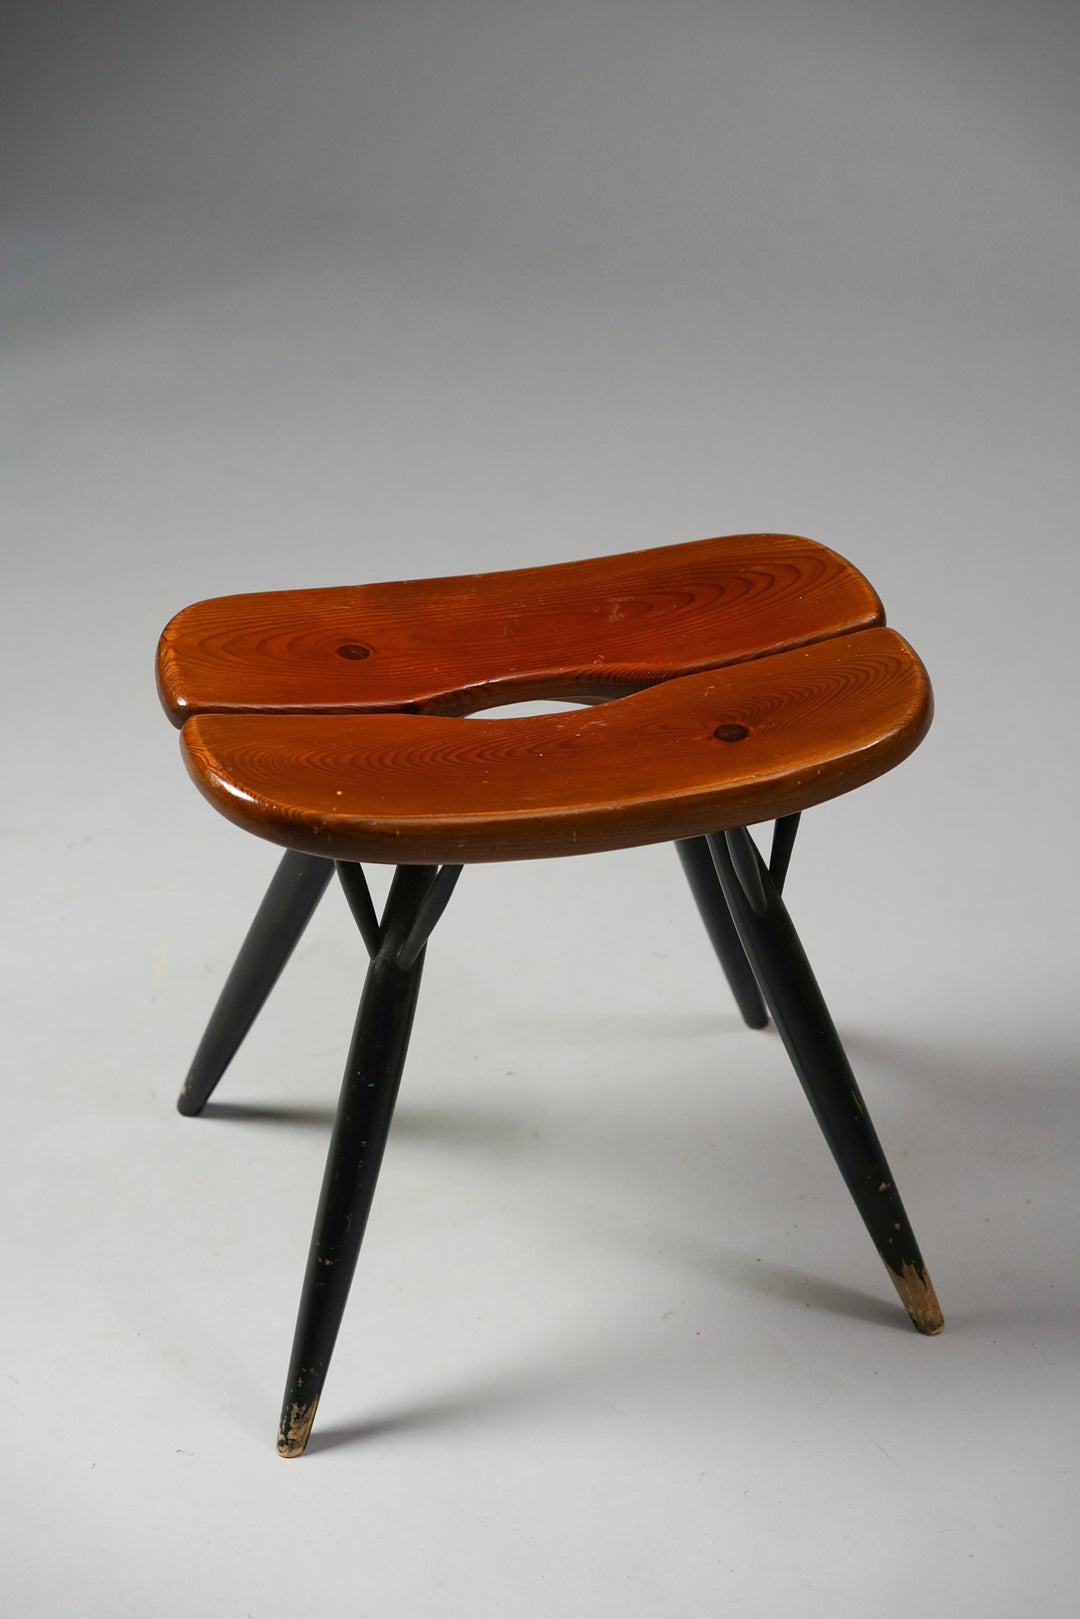 Pirkka stool, Ilmari Tapiovaara, 1950s